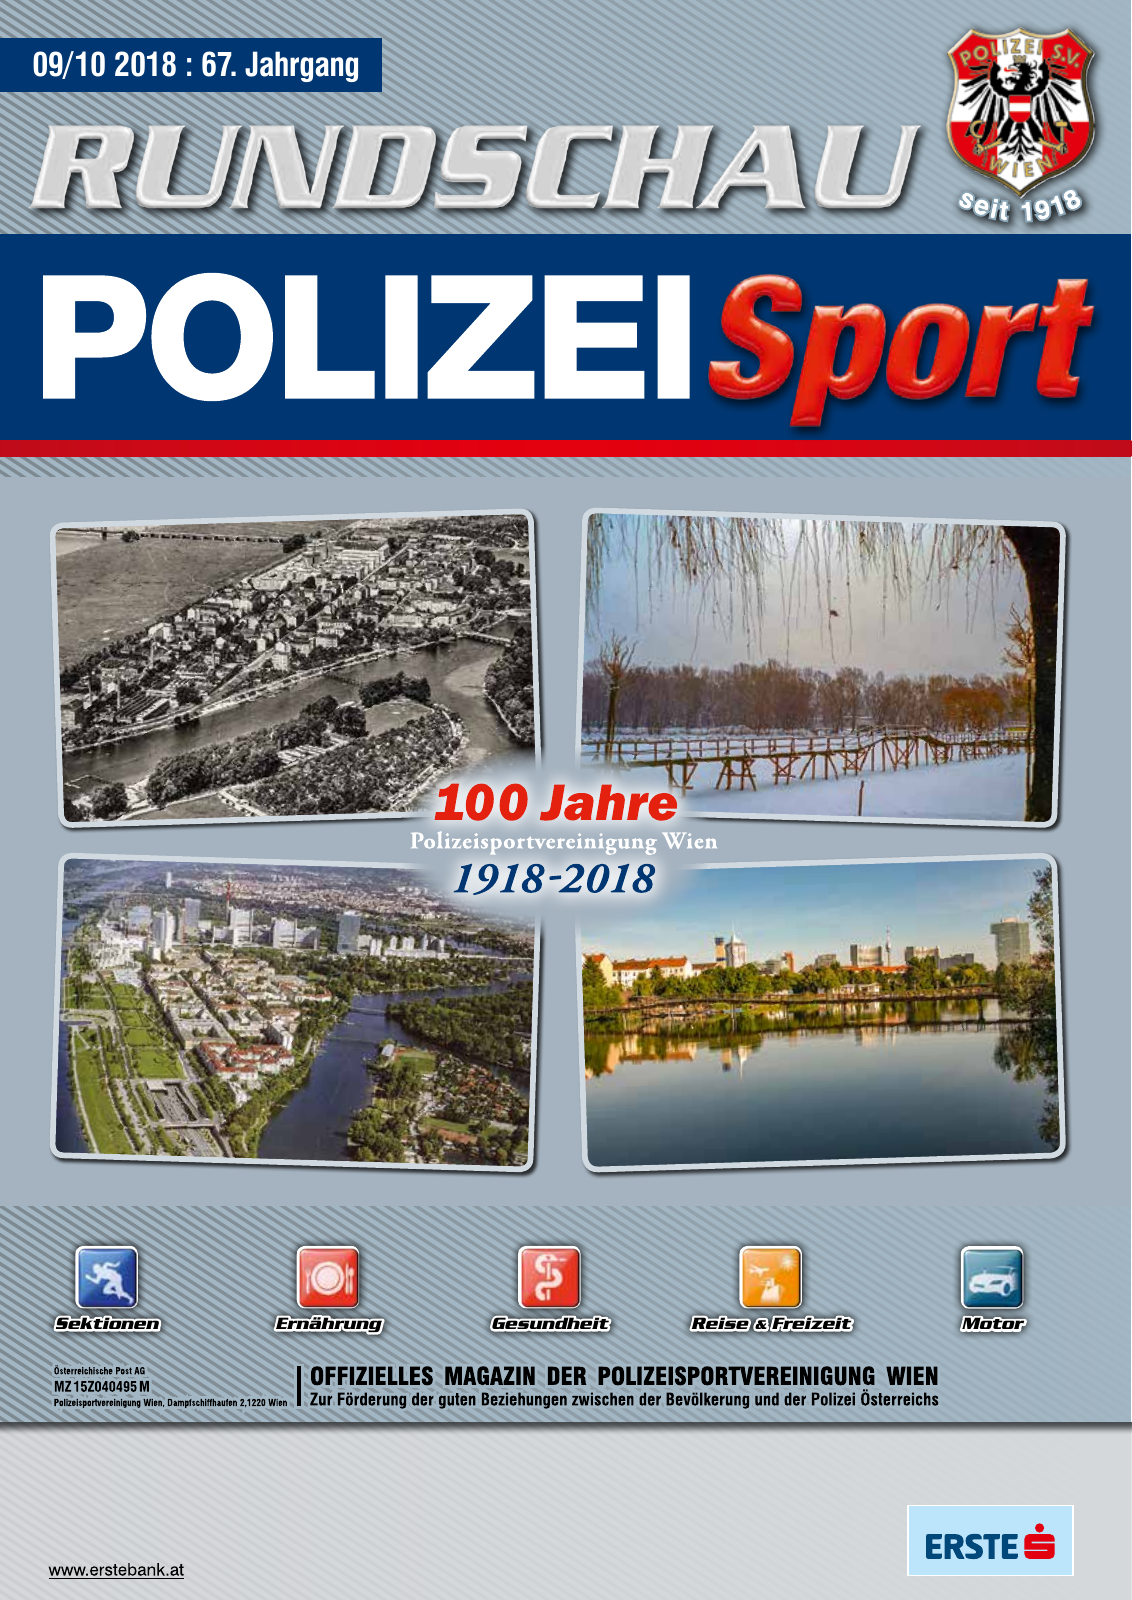 Vorschau Rundschau Polizei Sport 09-10/2018 Seite 1